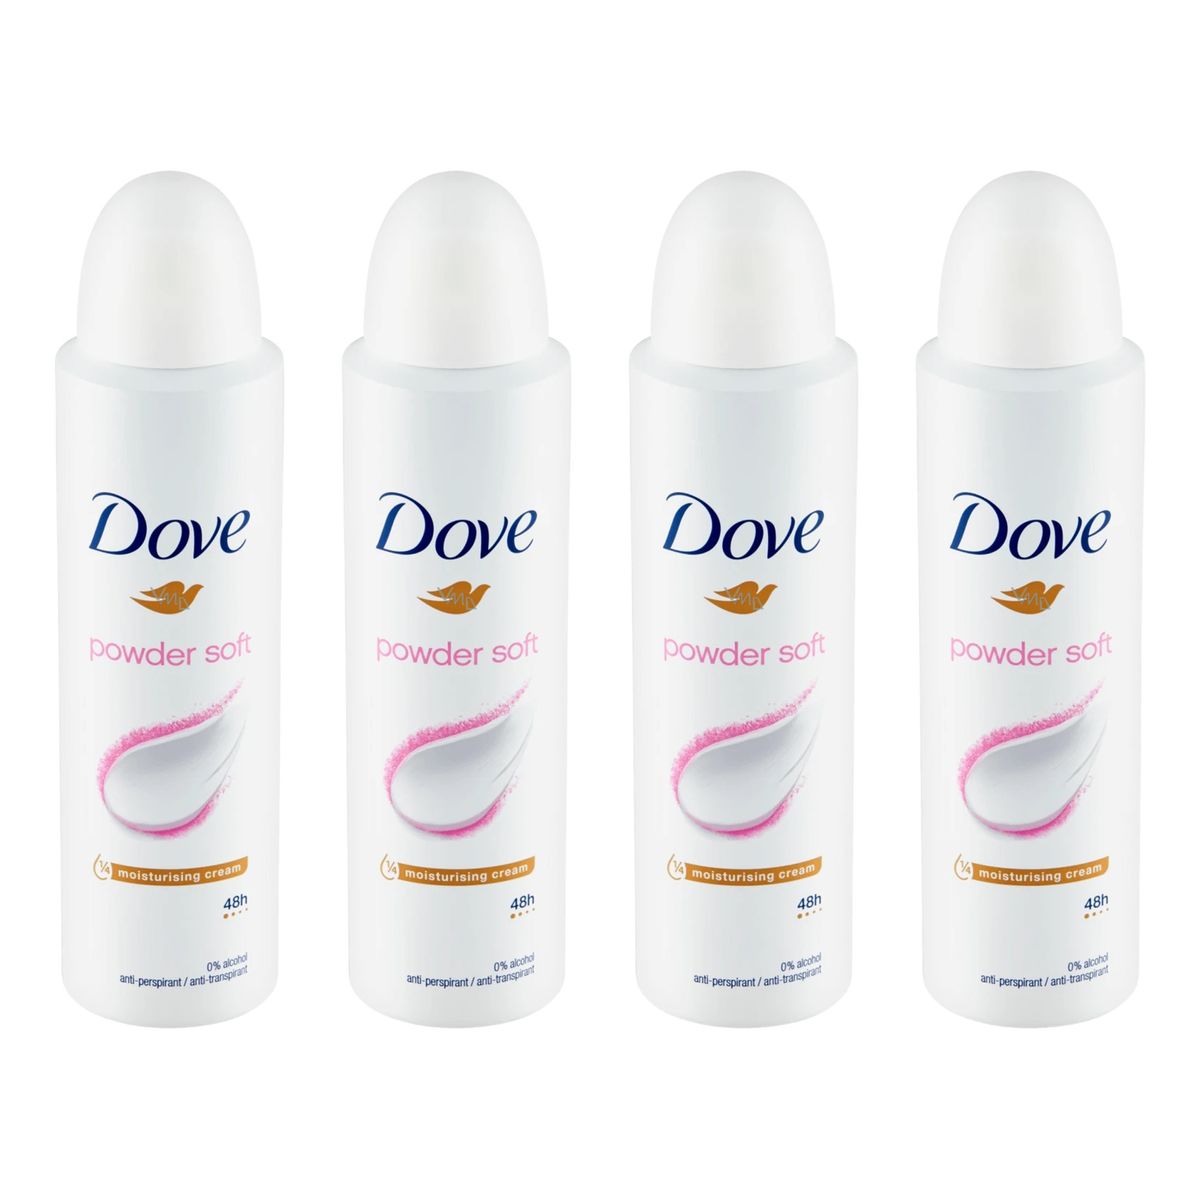 Dove Powder Soft 48h Antyperspirant spray damski 4szt.